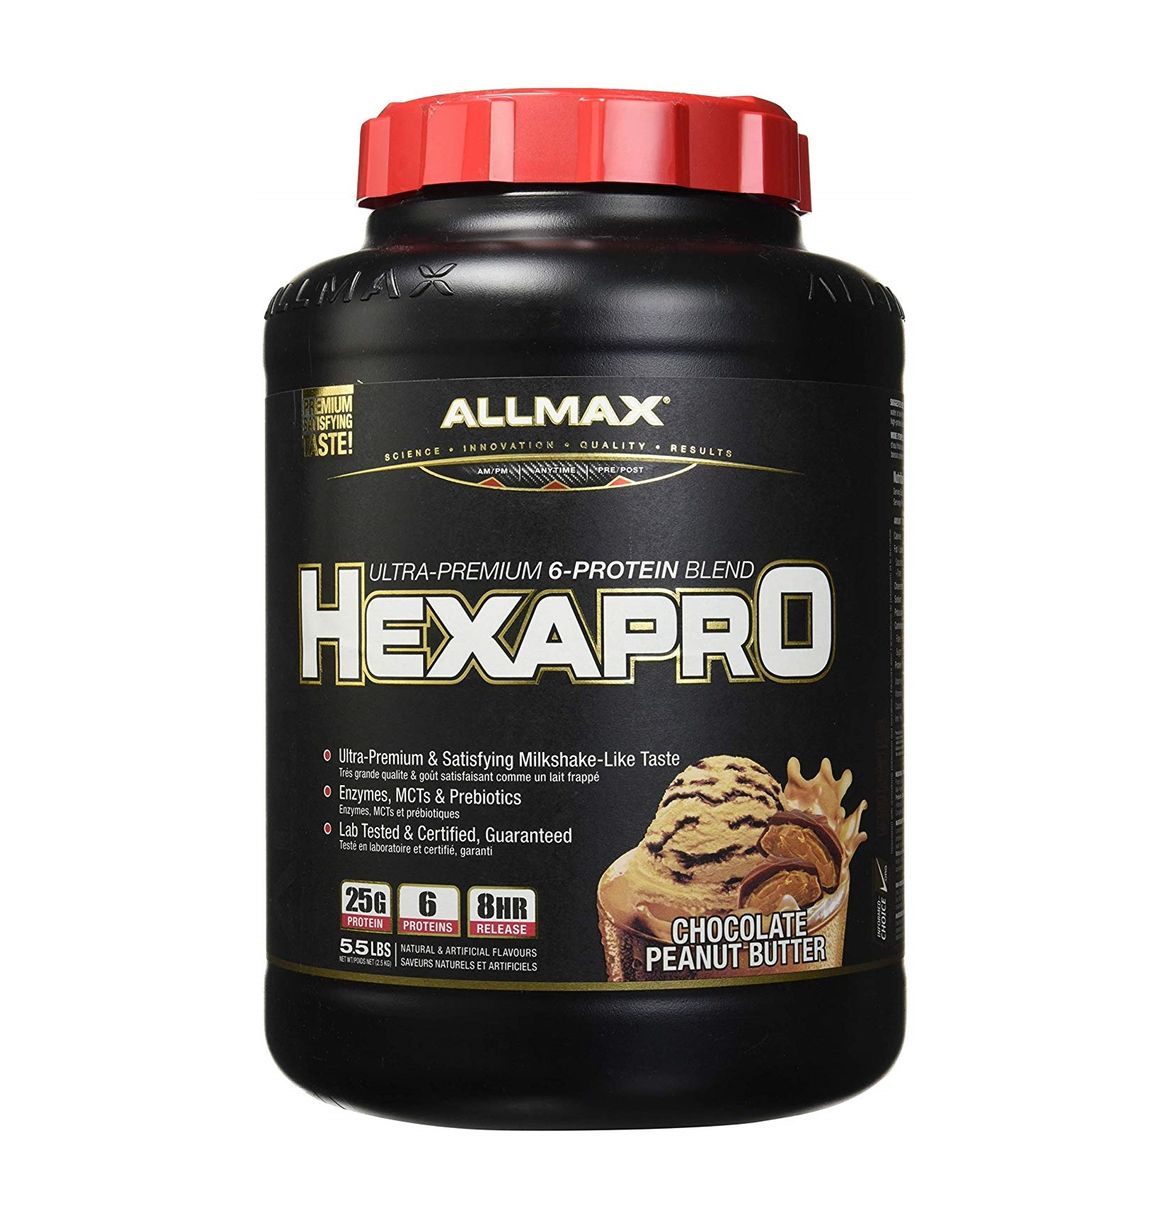 Allmax hexapro